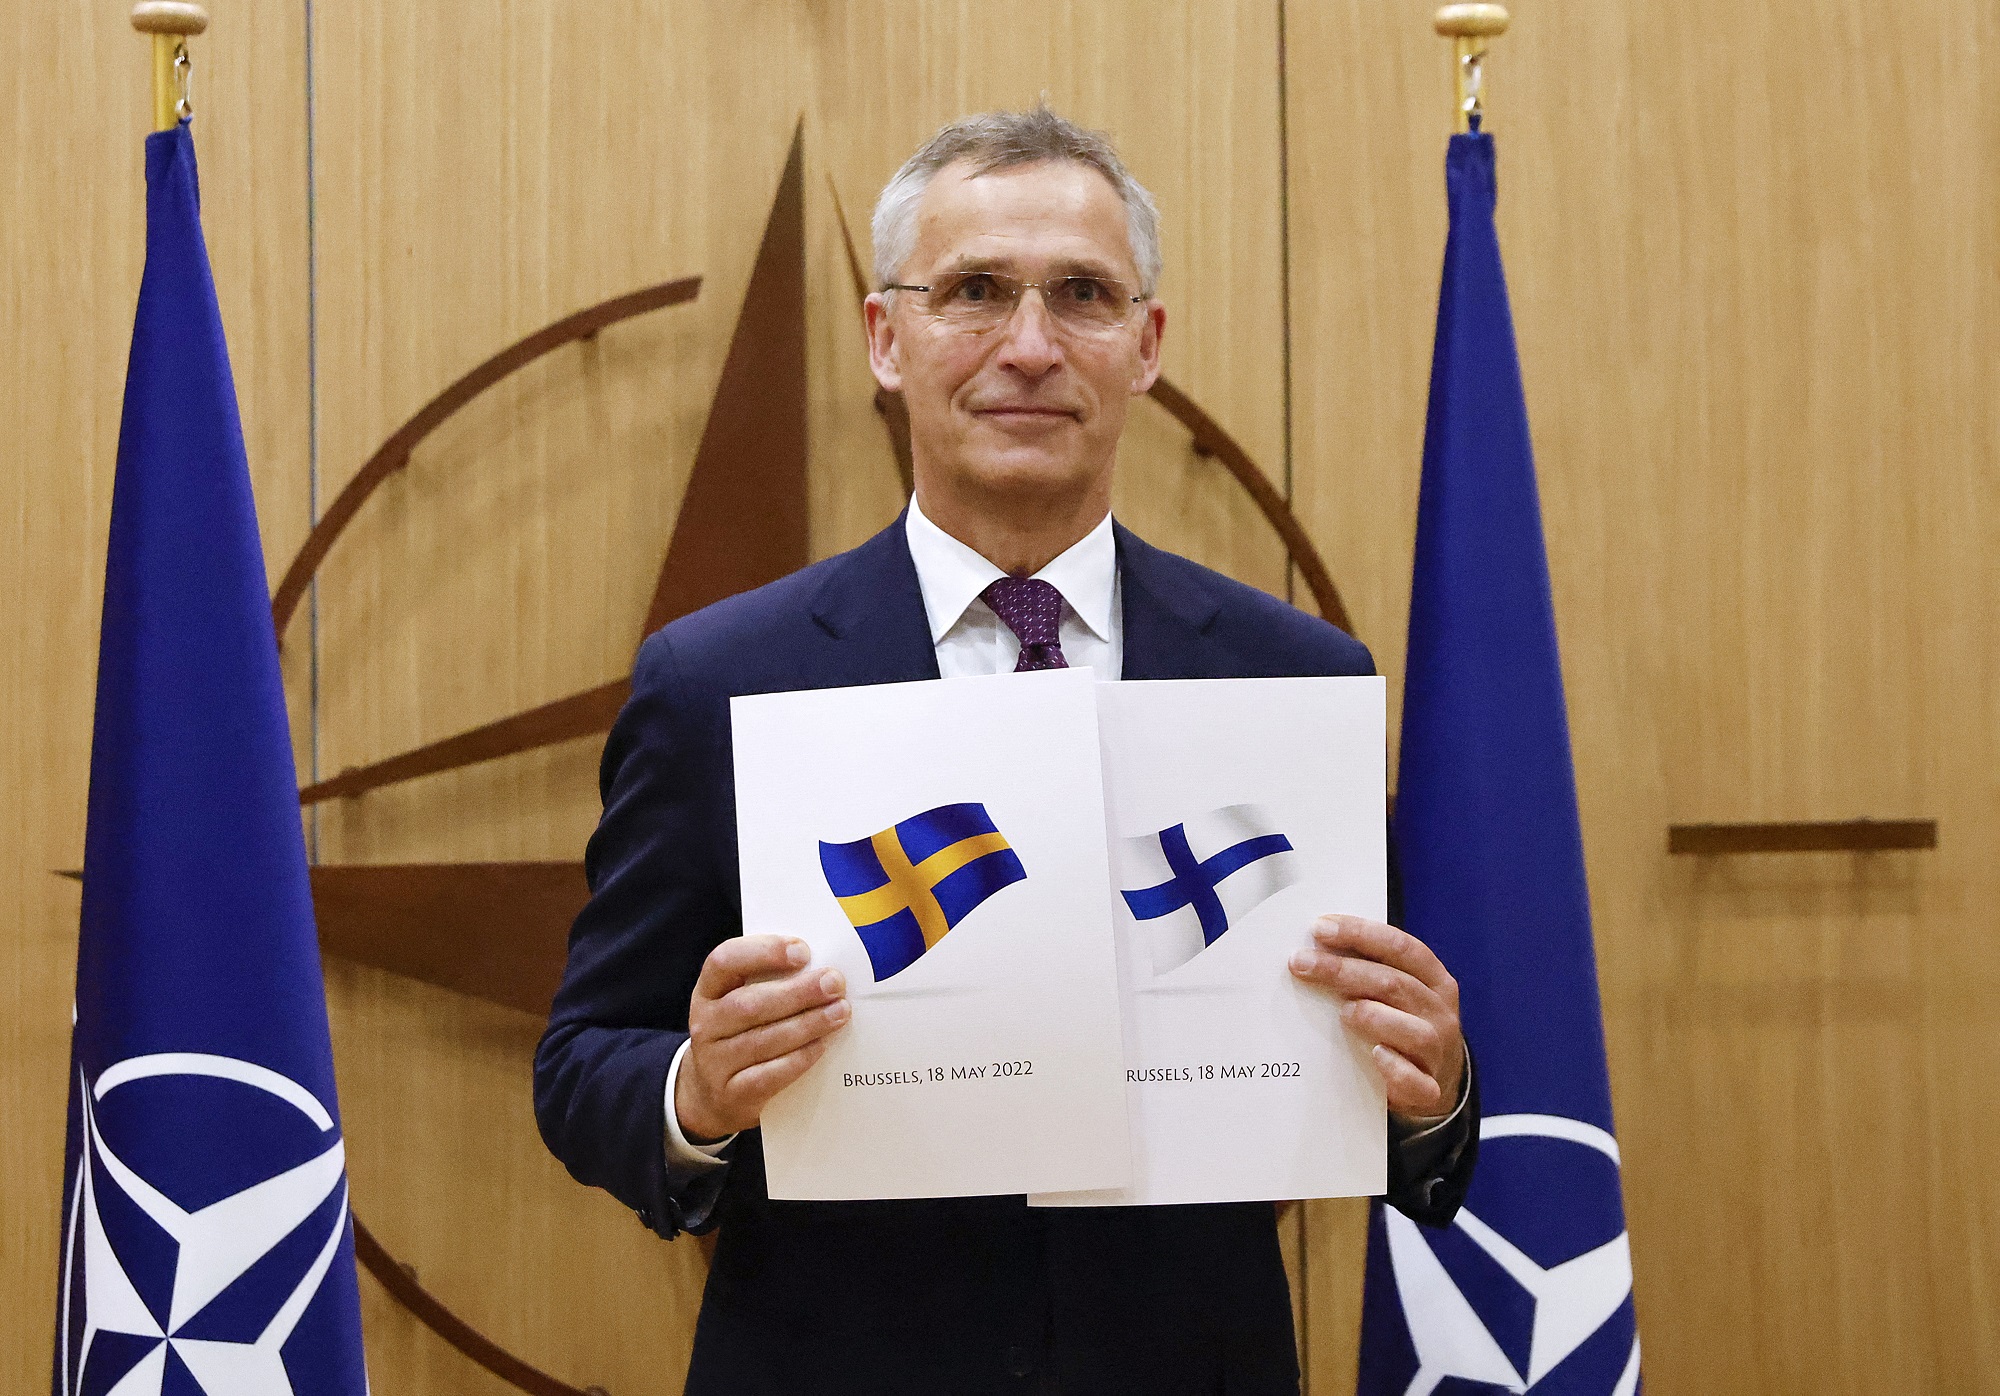 Thụy Điển - một quốc gia yên bình và thịnh vượng - đã gia nhập NATO vào năm 2024, mở rộng quyền lợi bảo vệ quốc phòng và đóng góp vào sự ổn định khu vực. Điều này cho thấy sự quan tâm và tiếp tục phát triển về mặt an ninh tại Thụy Điển. Hãy xem hình ảnh liên quan để hiểu thêm về tầm quan trọng của việc này.